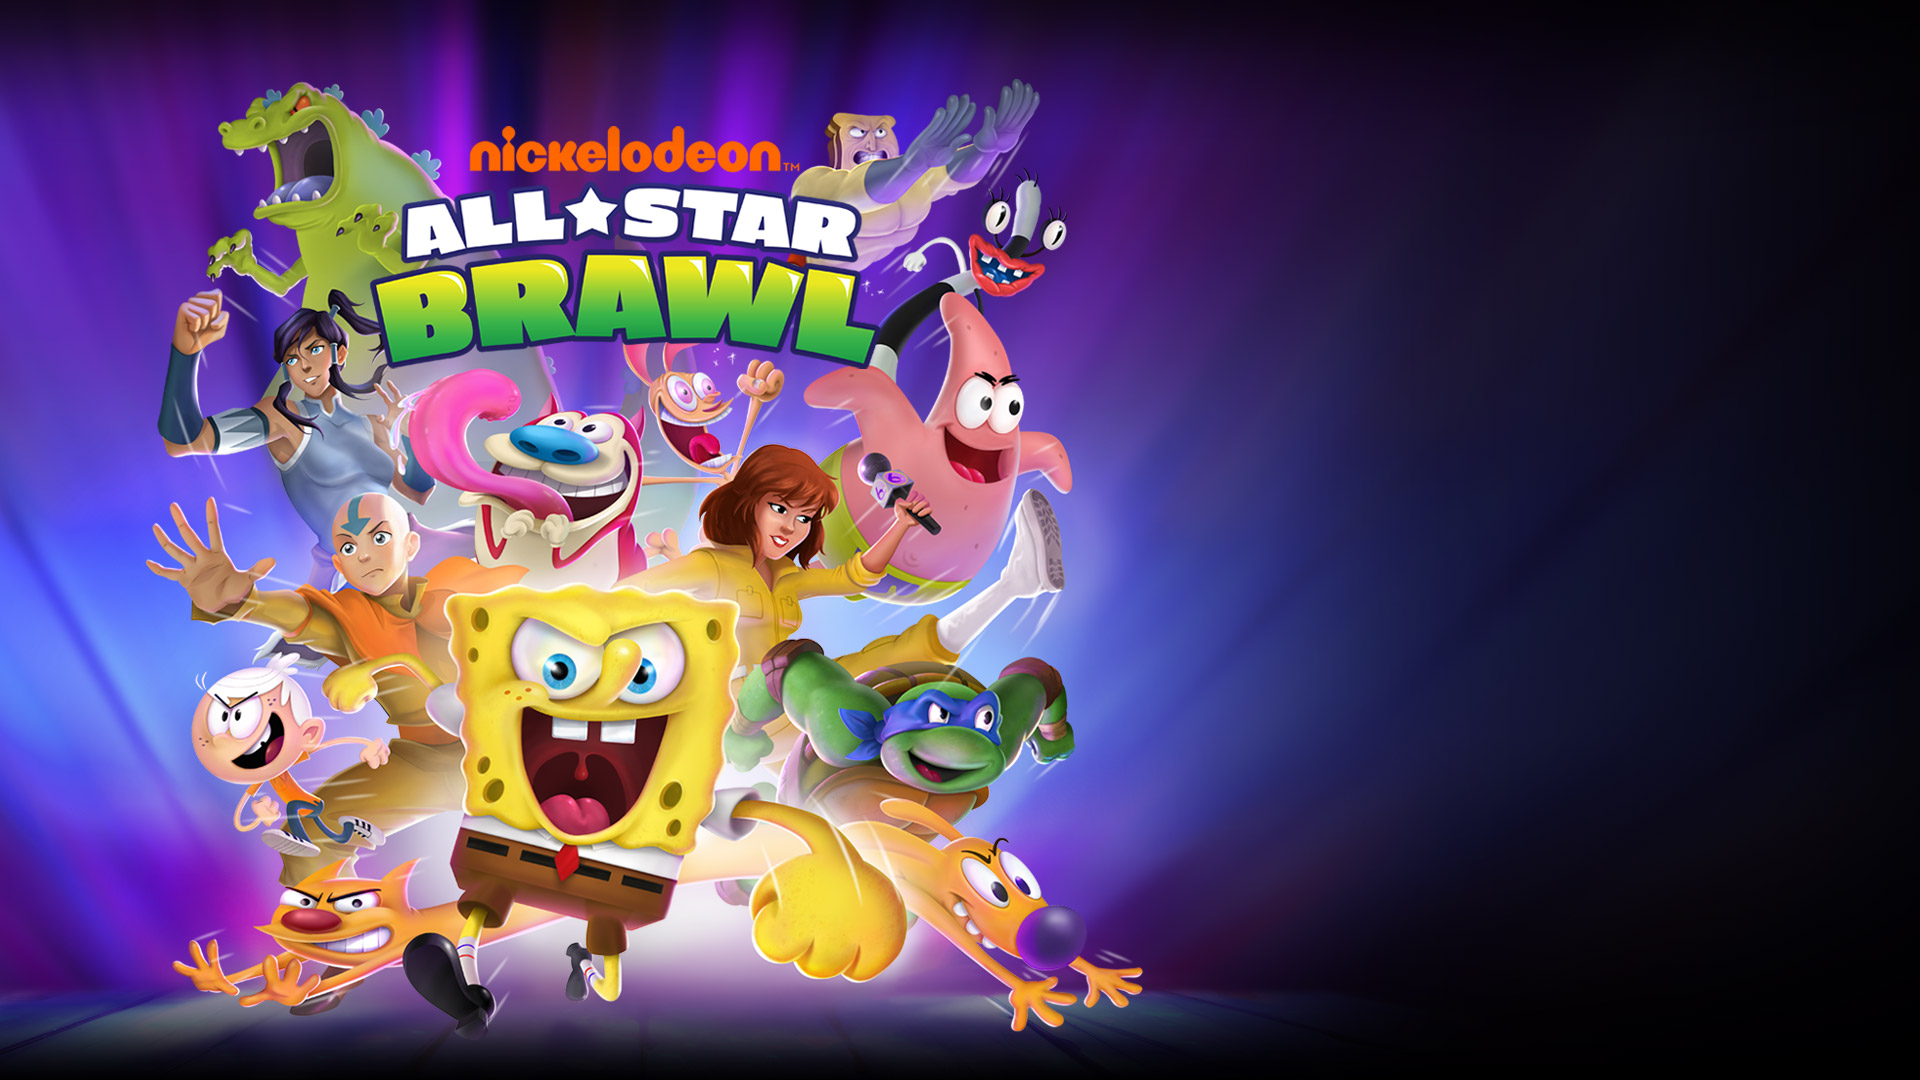 Nickelodeon All-Star Brawl, Bob Esponja, Aang, Kora, Danny Phantom e outras estrelas da Nickelodeon avançam prontos para lutar